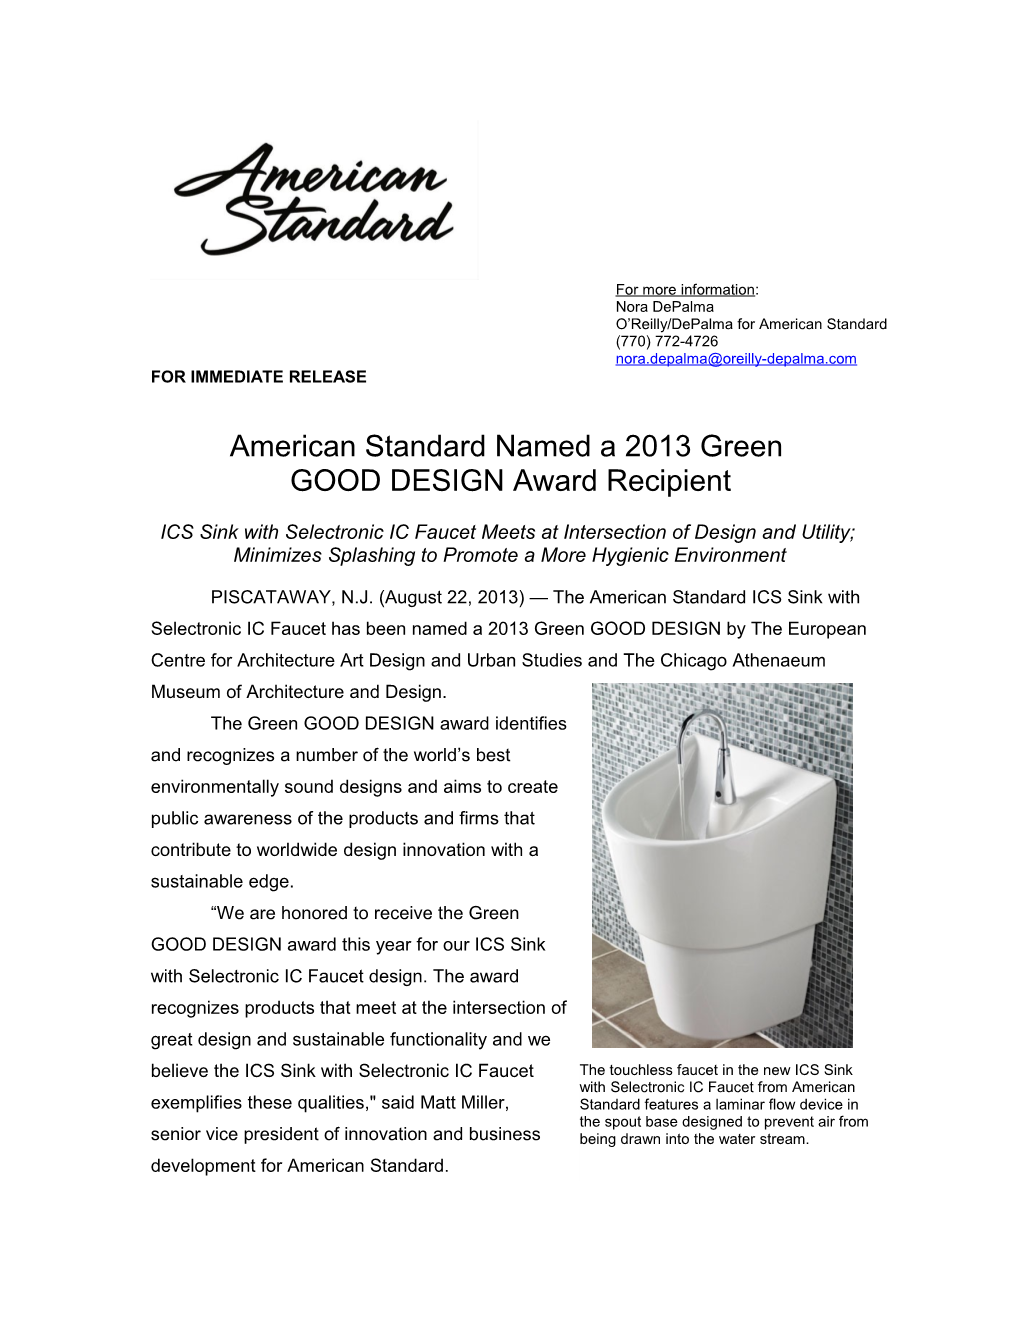 American Standard Named a 2013 Green GOOD DESIGN Award Recipient3-3-3